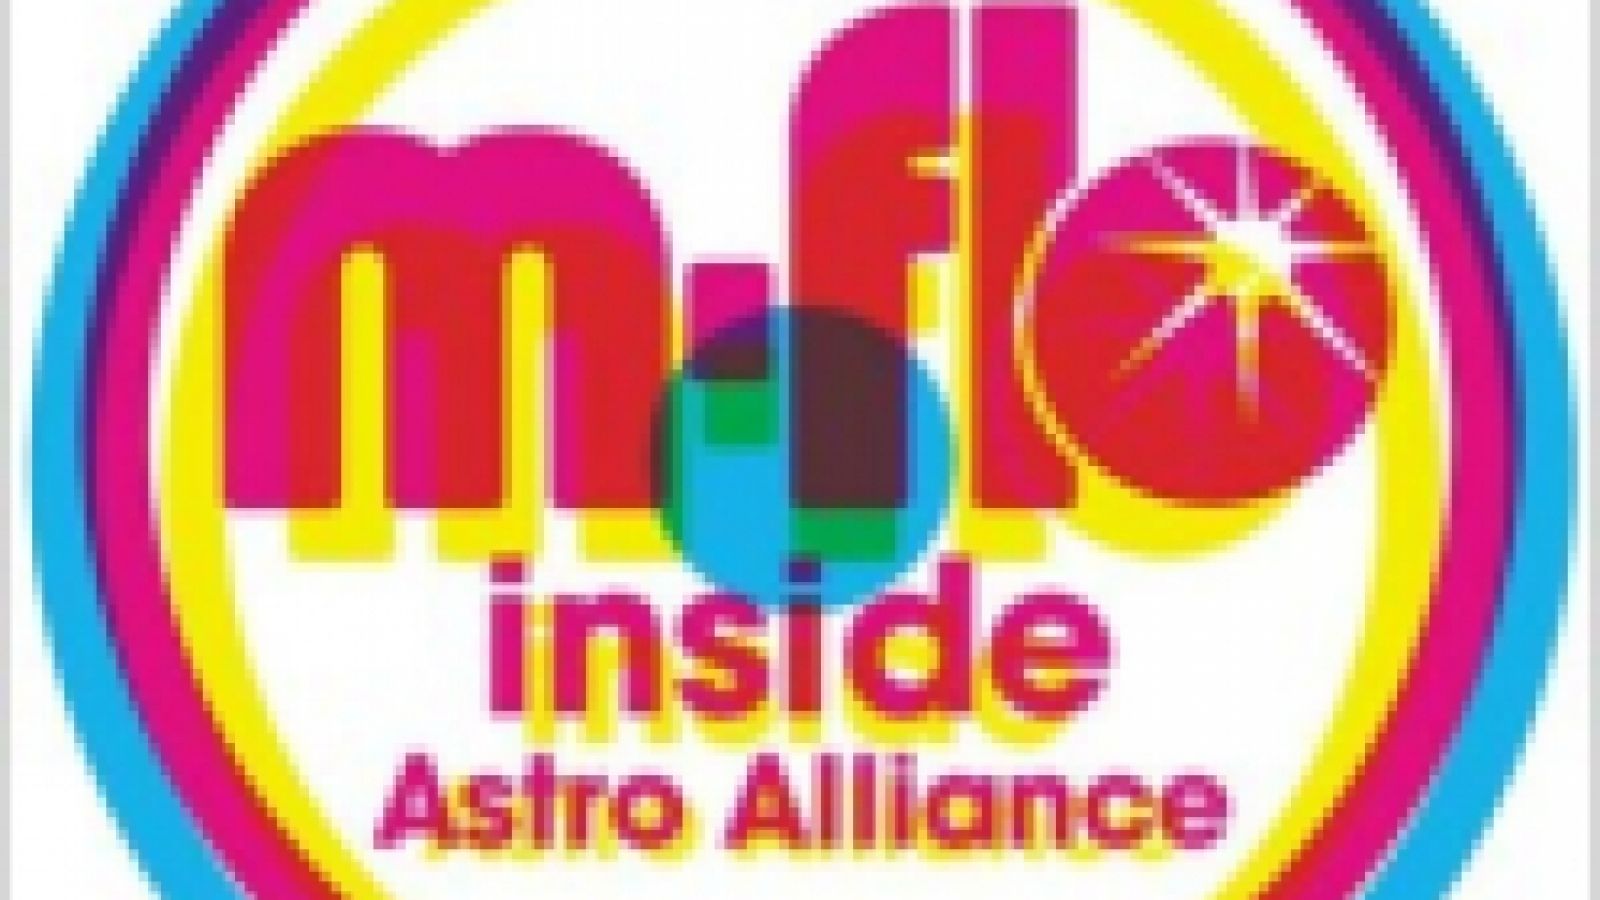 m-flo - inside (Astro Alliance) © DJ OZMA